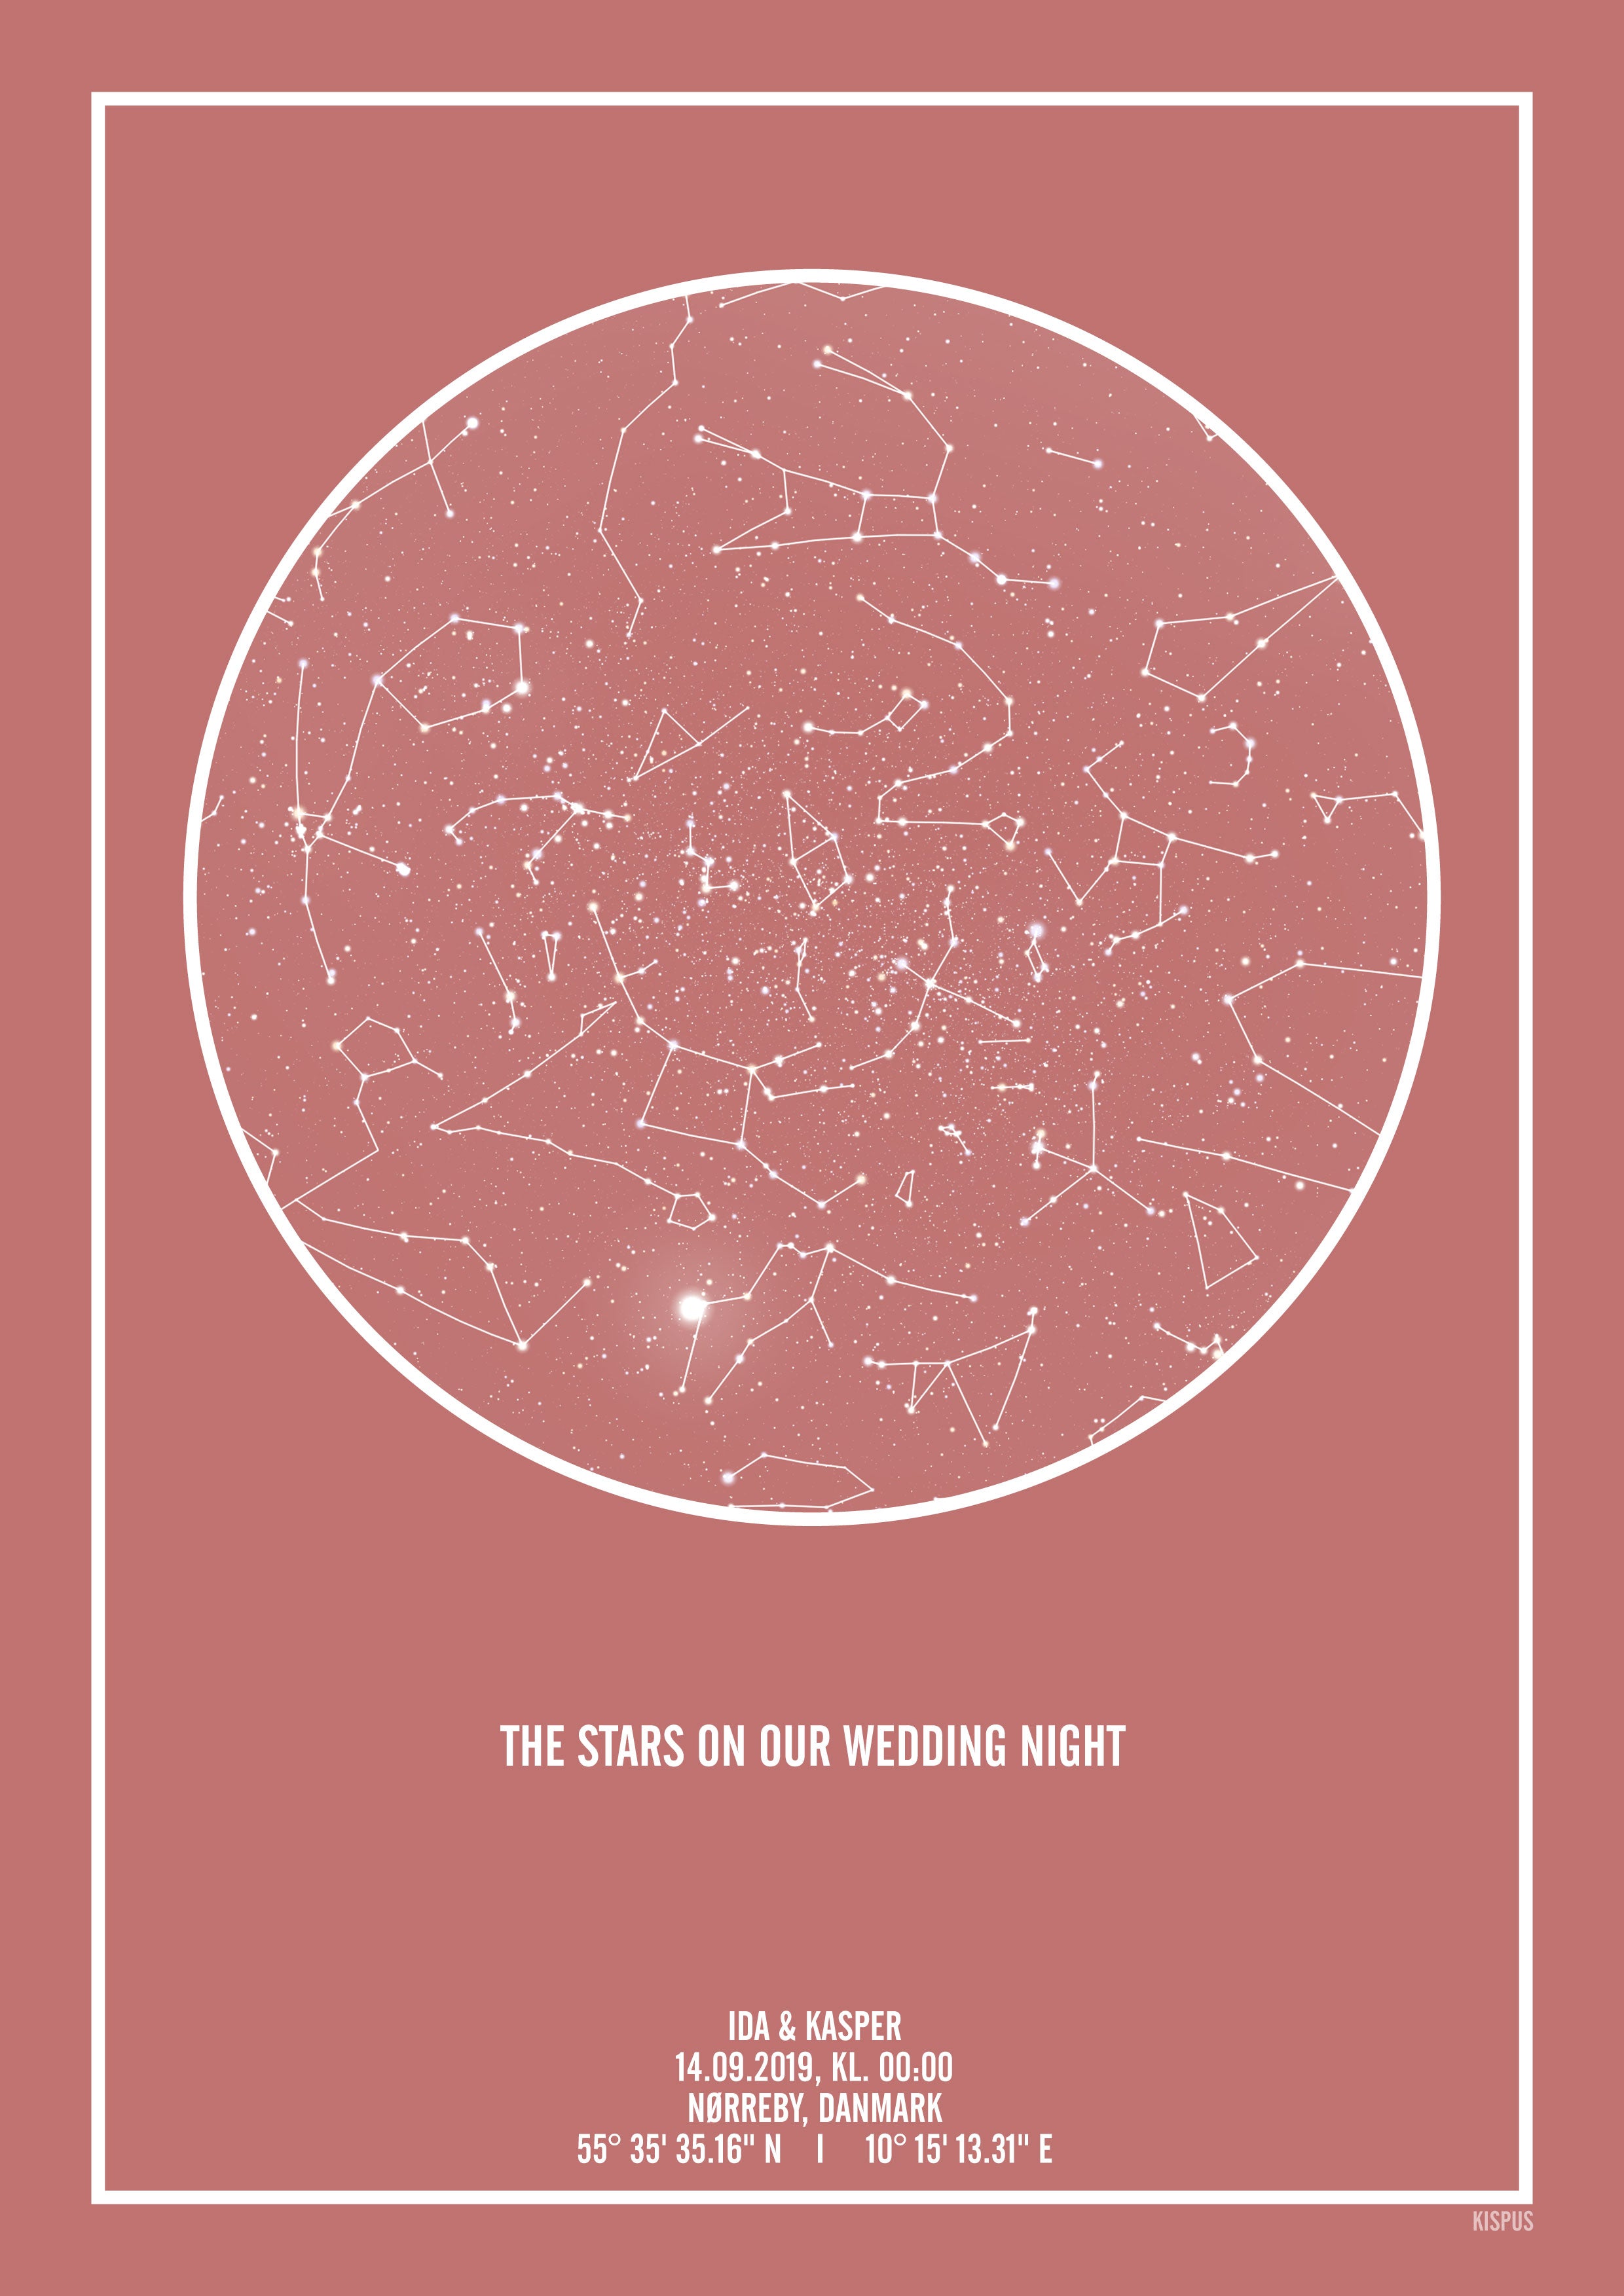 Se PERSONLIG STJERNEHIMMEL PLAKAT (BLUSH) - A4 / Hvid tekst + blush-farvet stjernehimmel / Stjernehimmel med stjernebilleder hos KISPUS